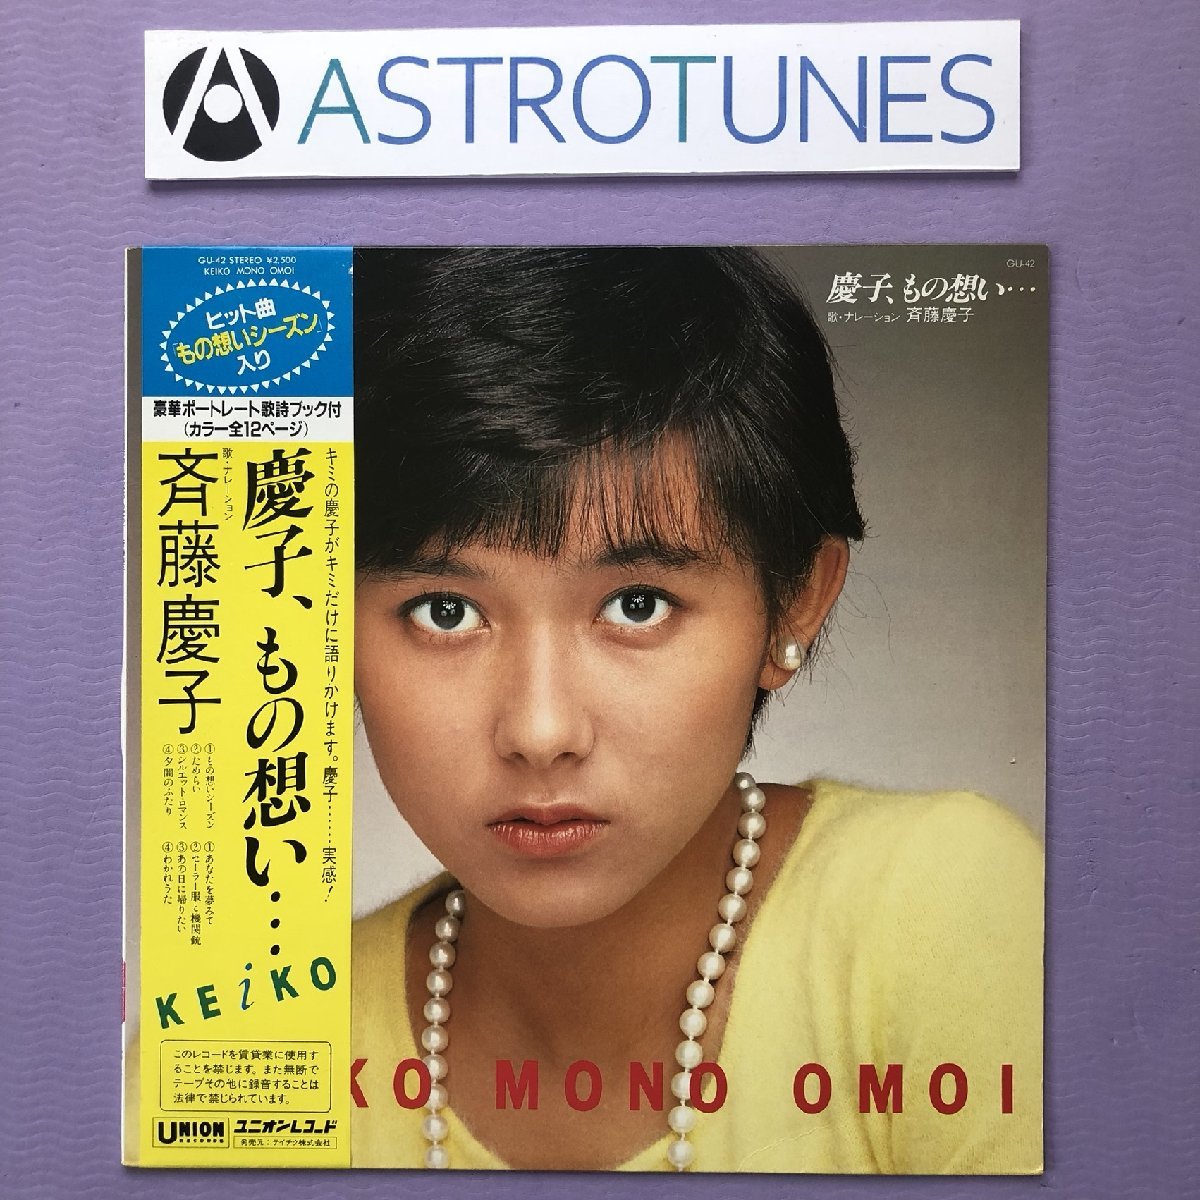 唱片精美, 无划痕, 状况良好 斋藤惠子 1982 年 LP 唱片 Keiko, 想法...原创发行版带带 J-Pop 12P 照片小册子, 岩石, 持久性有机污染物, 萨线, 其他的